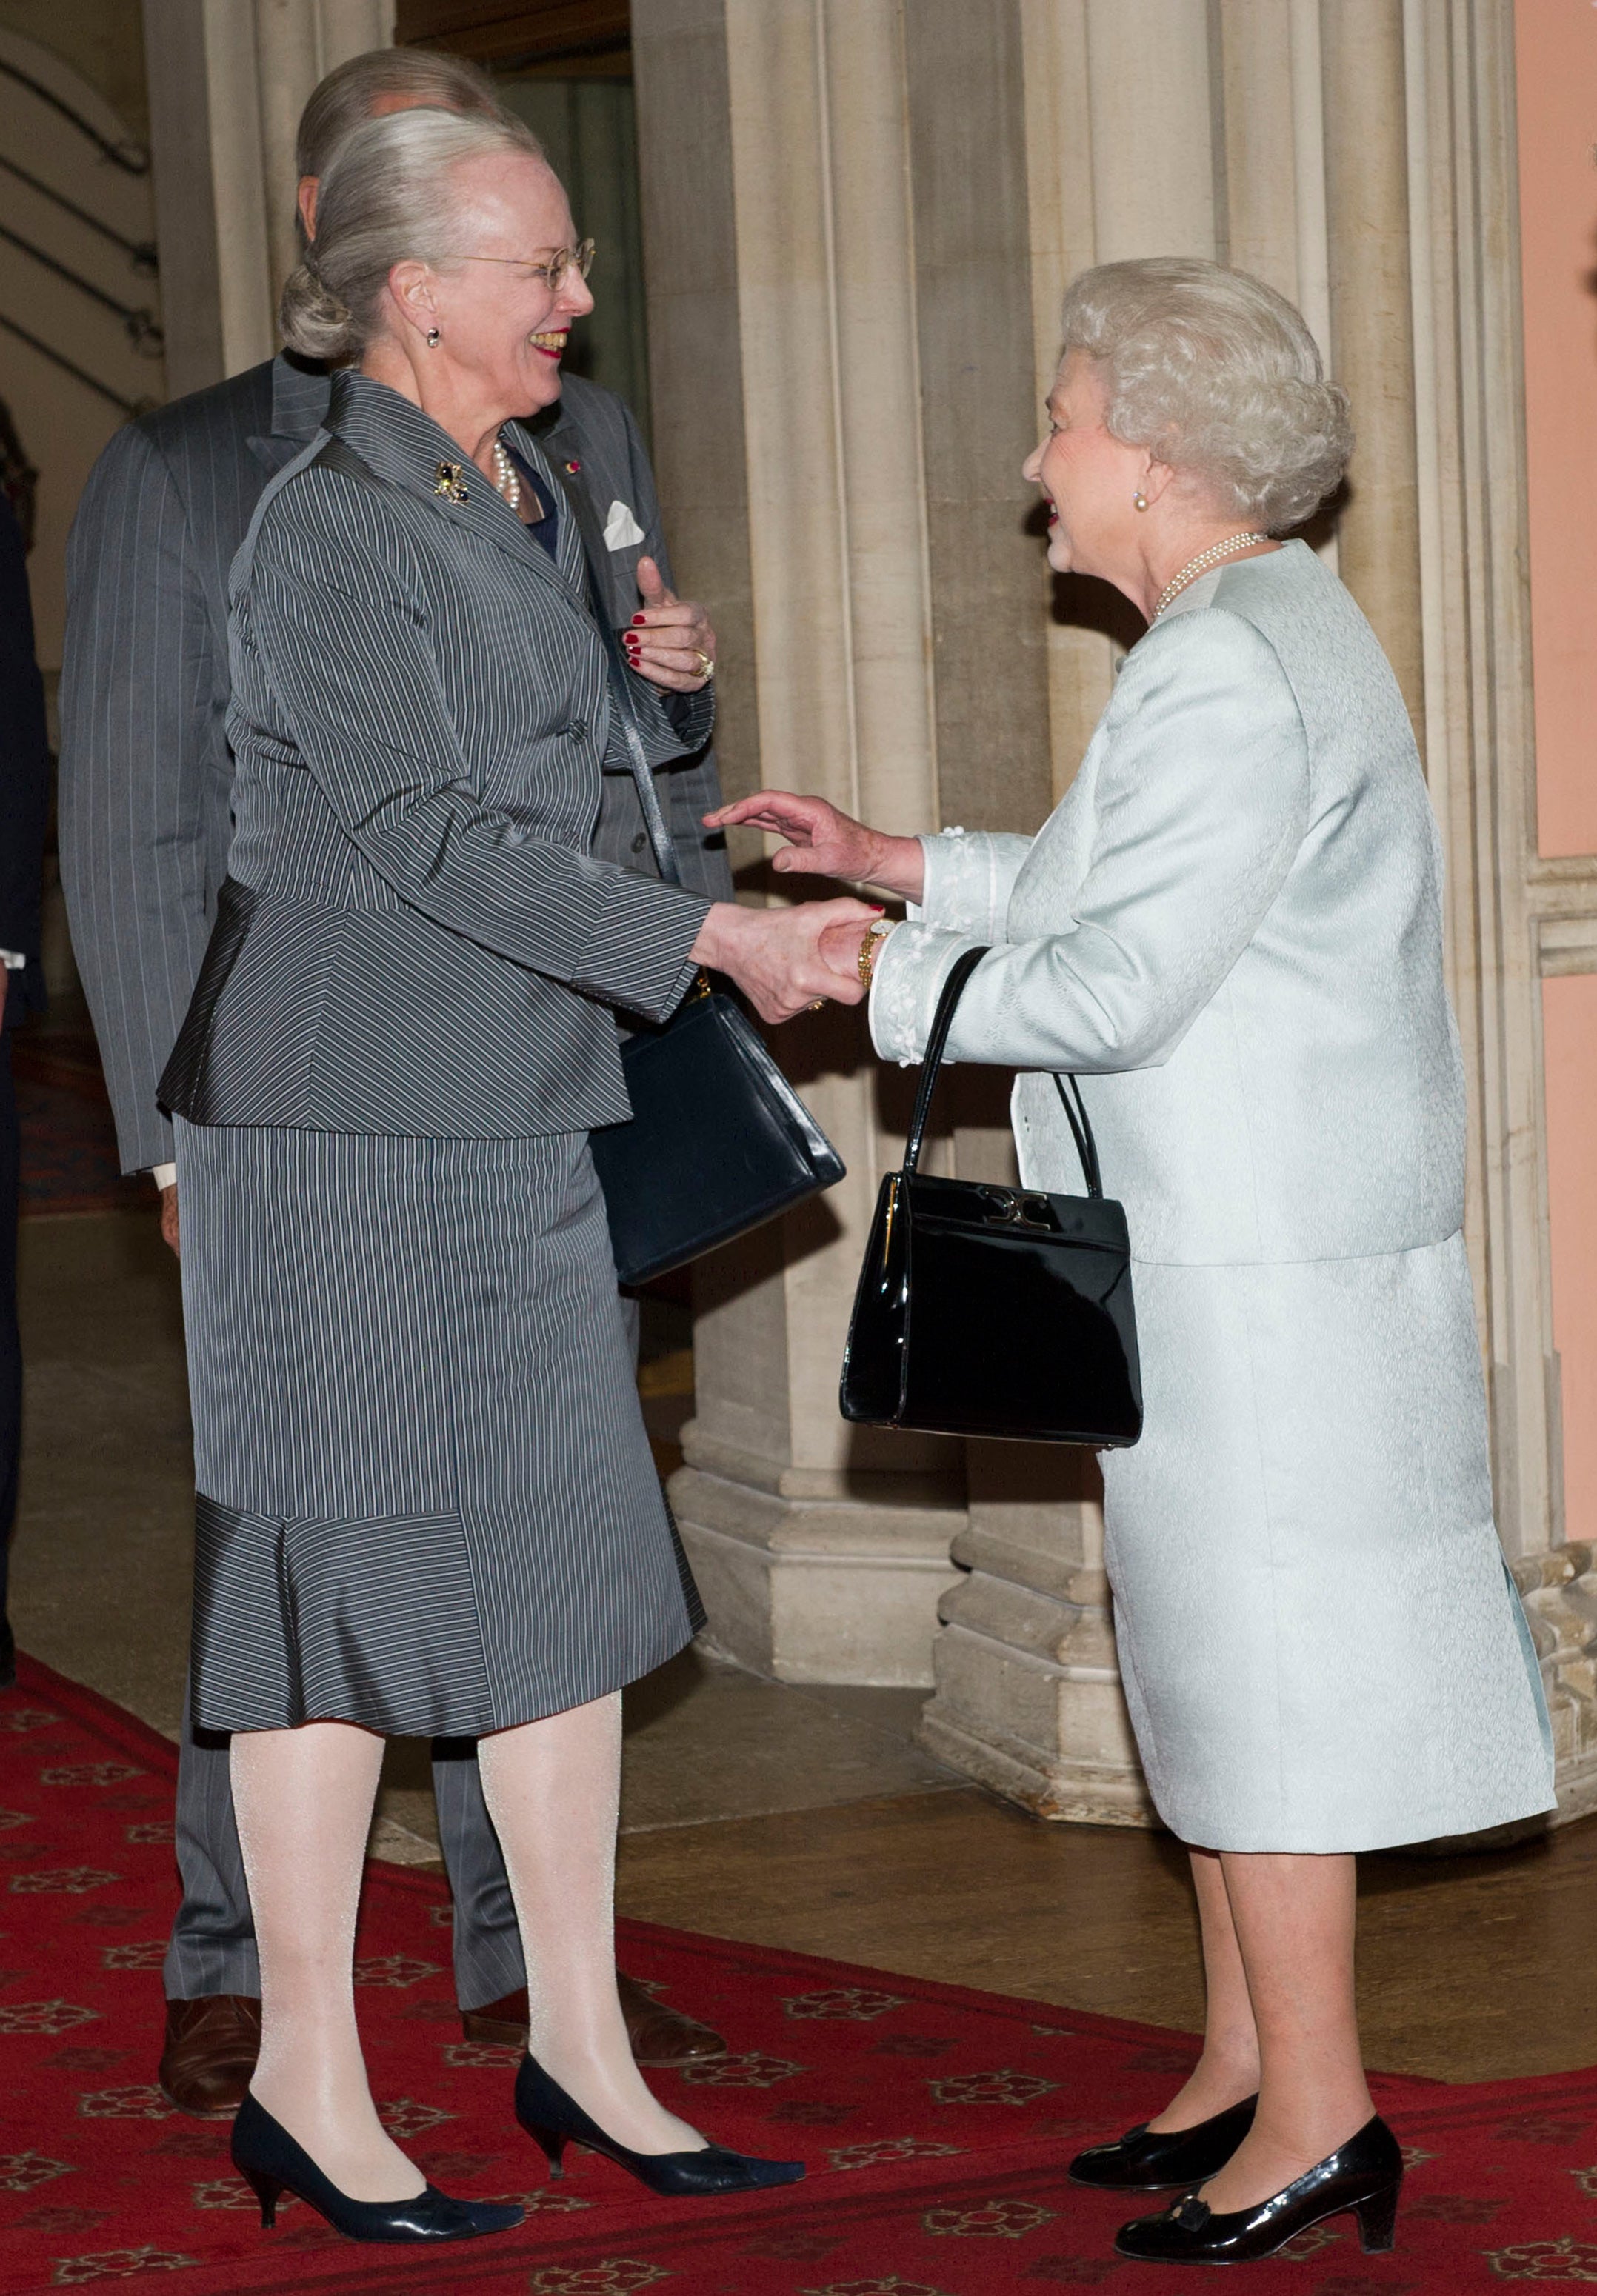 La reina Margrethe II de Dinamarca era una amiga cercana de la reina Isabel II